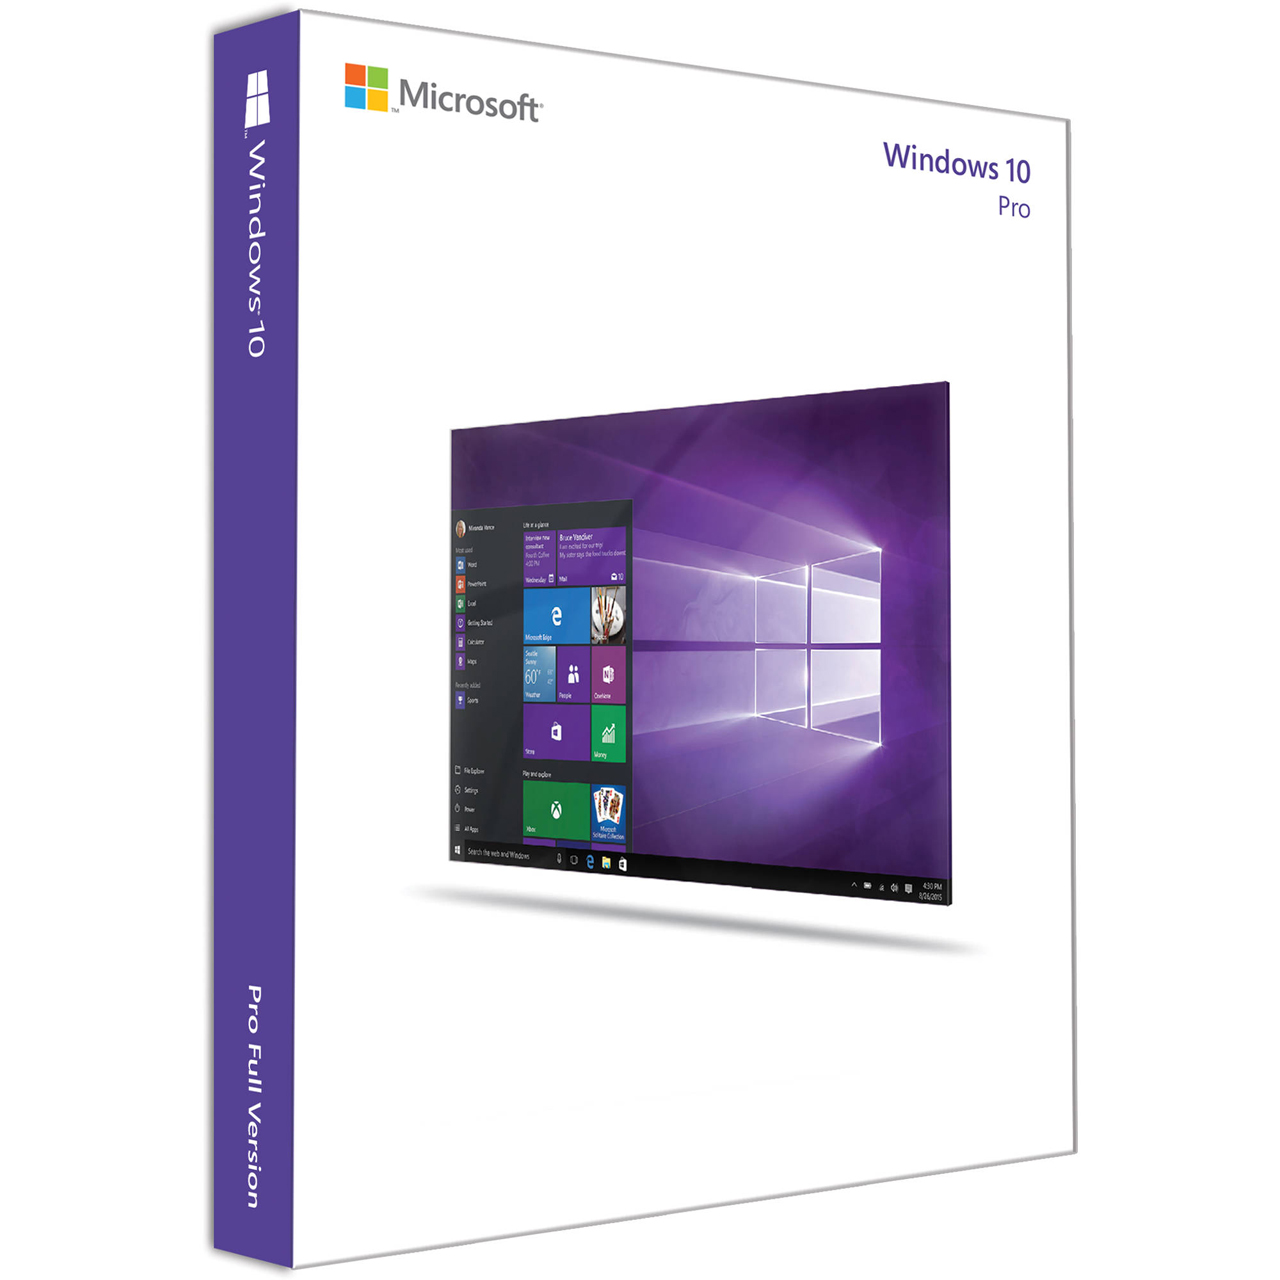 سیستم عامل مایکروسافت windows 10 Pro نشر آورکام